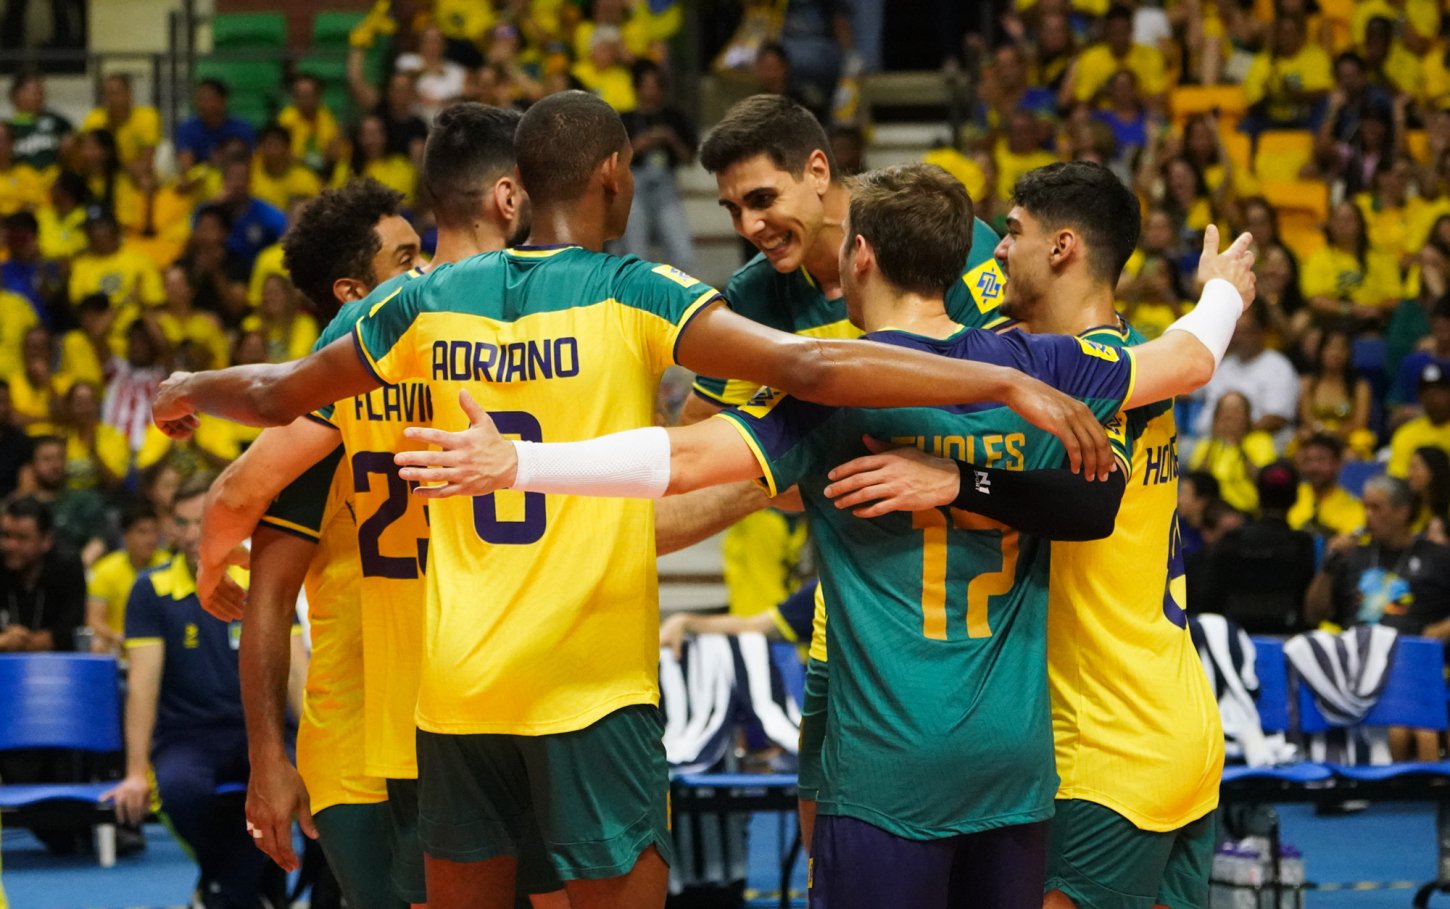 Na estreia, o Brasil vence o Peru no Sul-Americano masculino de vôlei por 3 sets a 0 - Foto: Reprodução/ Mauricio Val/FVImagem/CBV